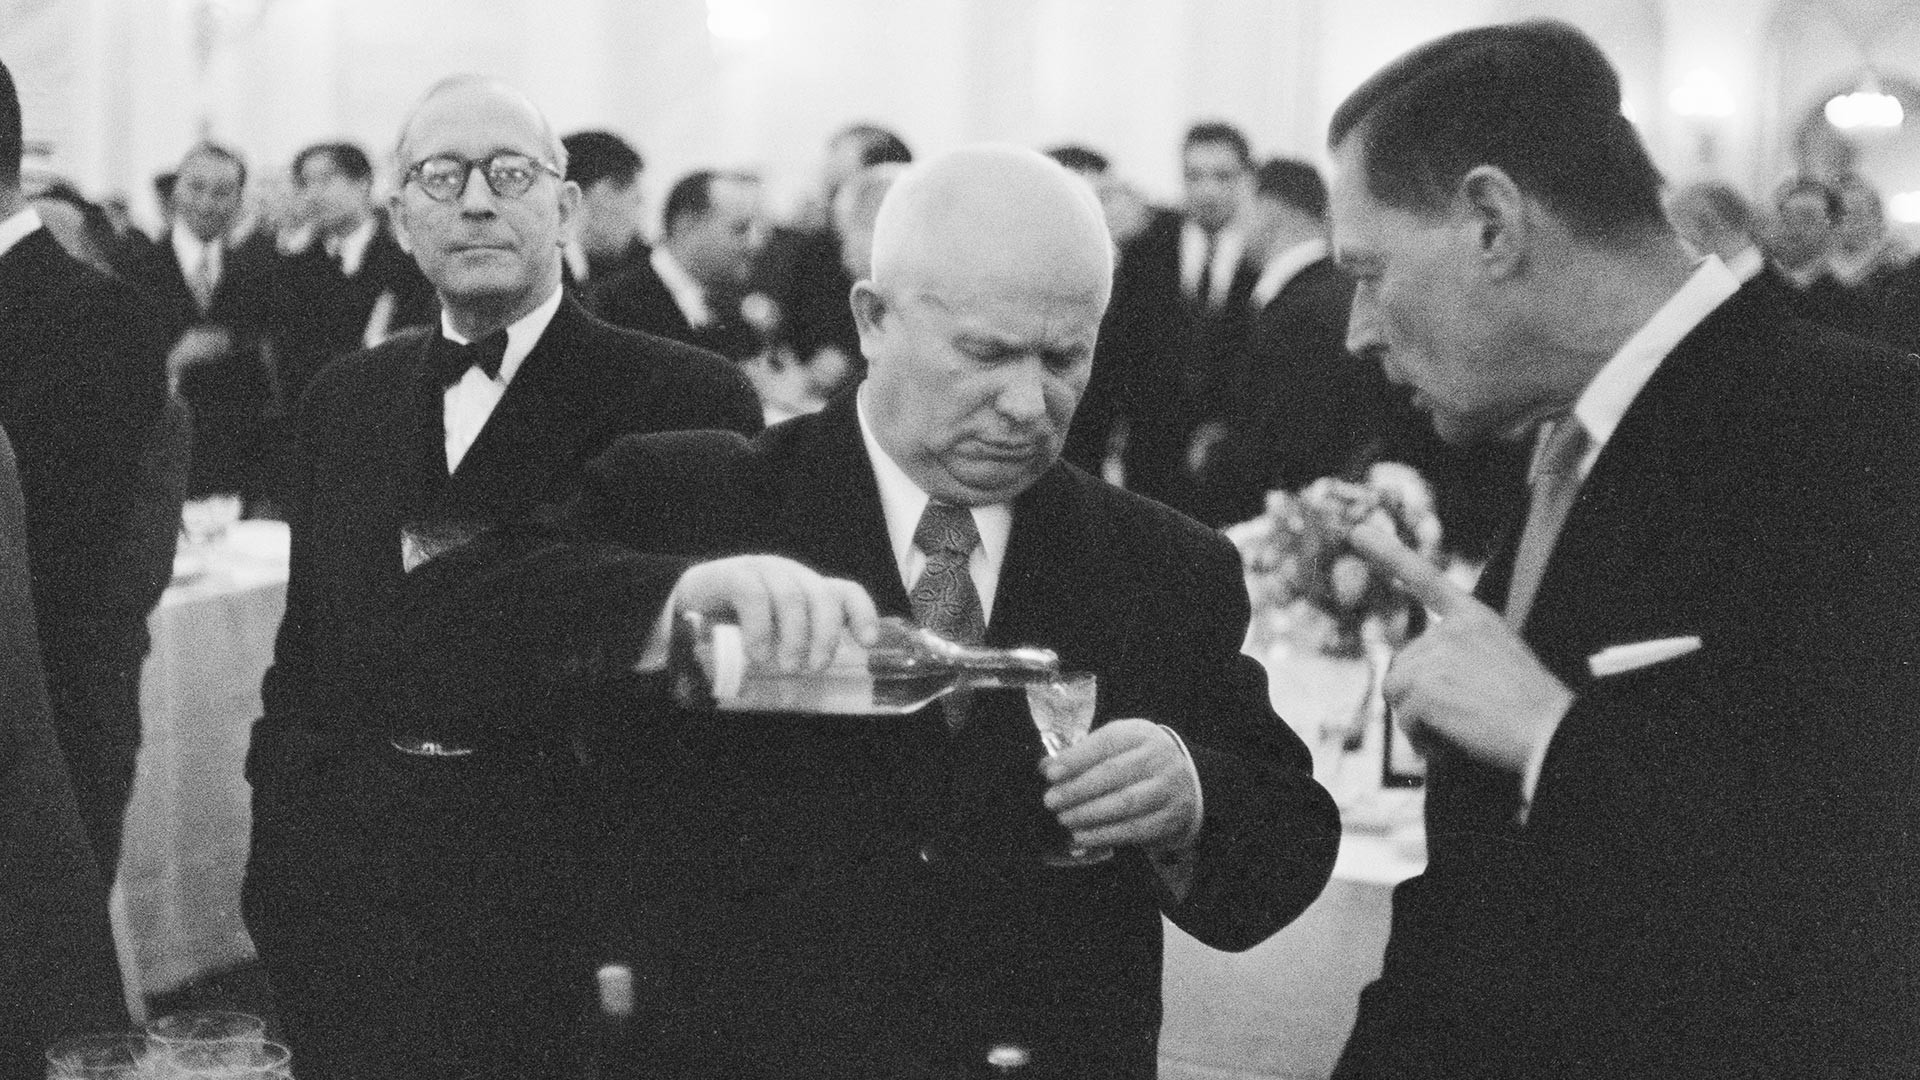 Le dirigeant soviétique Nikita Khrouchtchev et l’ambassadeur américain en URSS lors d’une réception, 1955